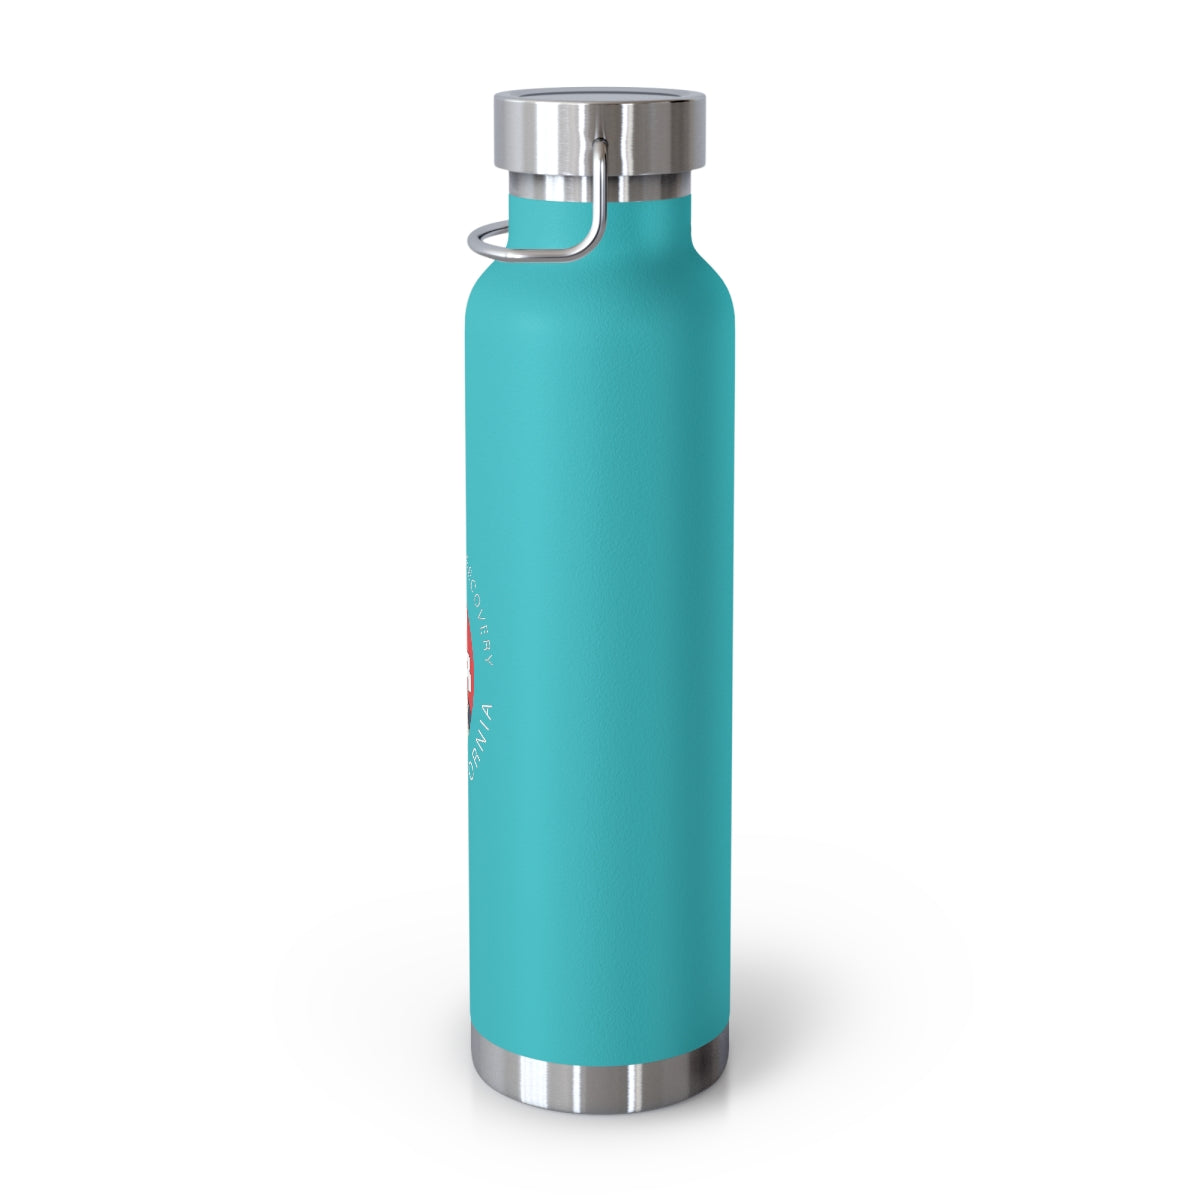 Camp SoberFest- Copper Vacuum Insulated Bottle, 22oz